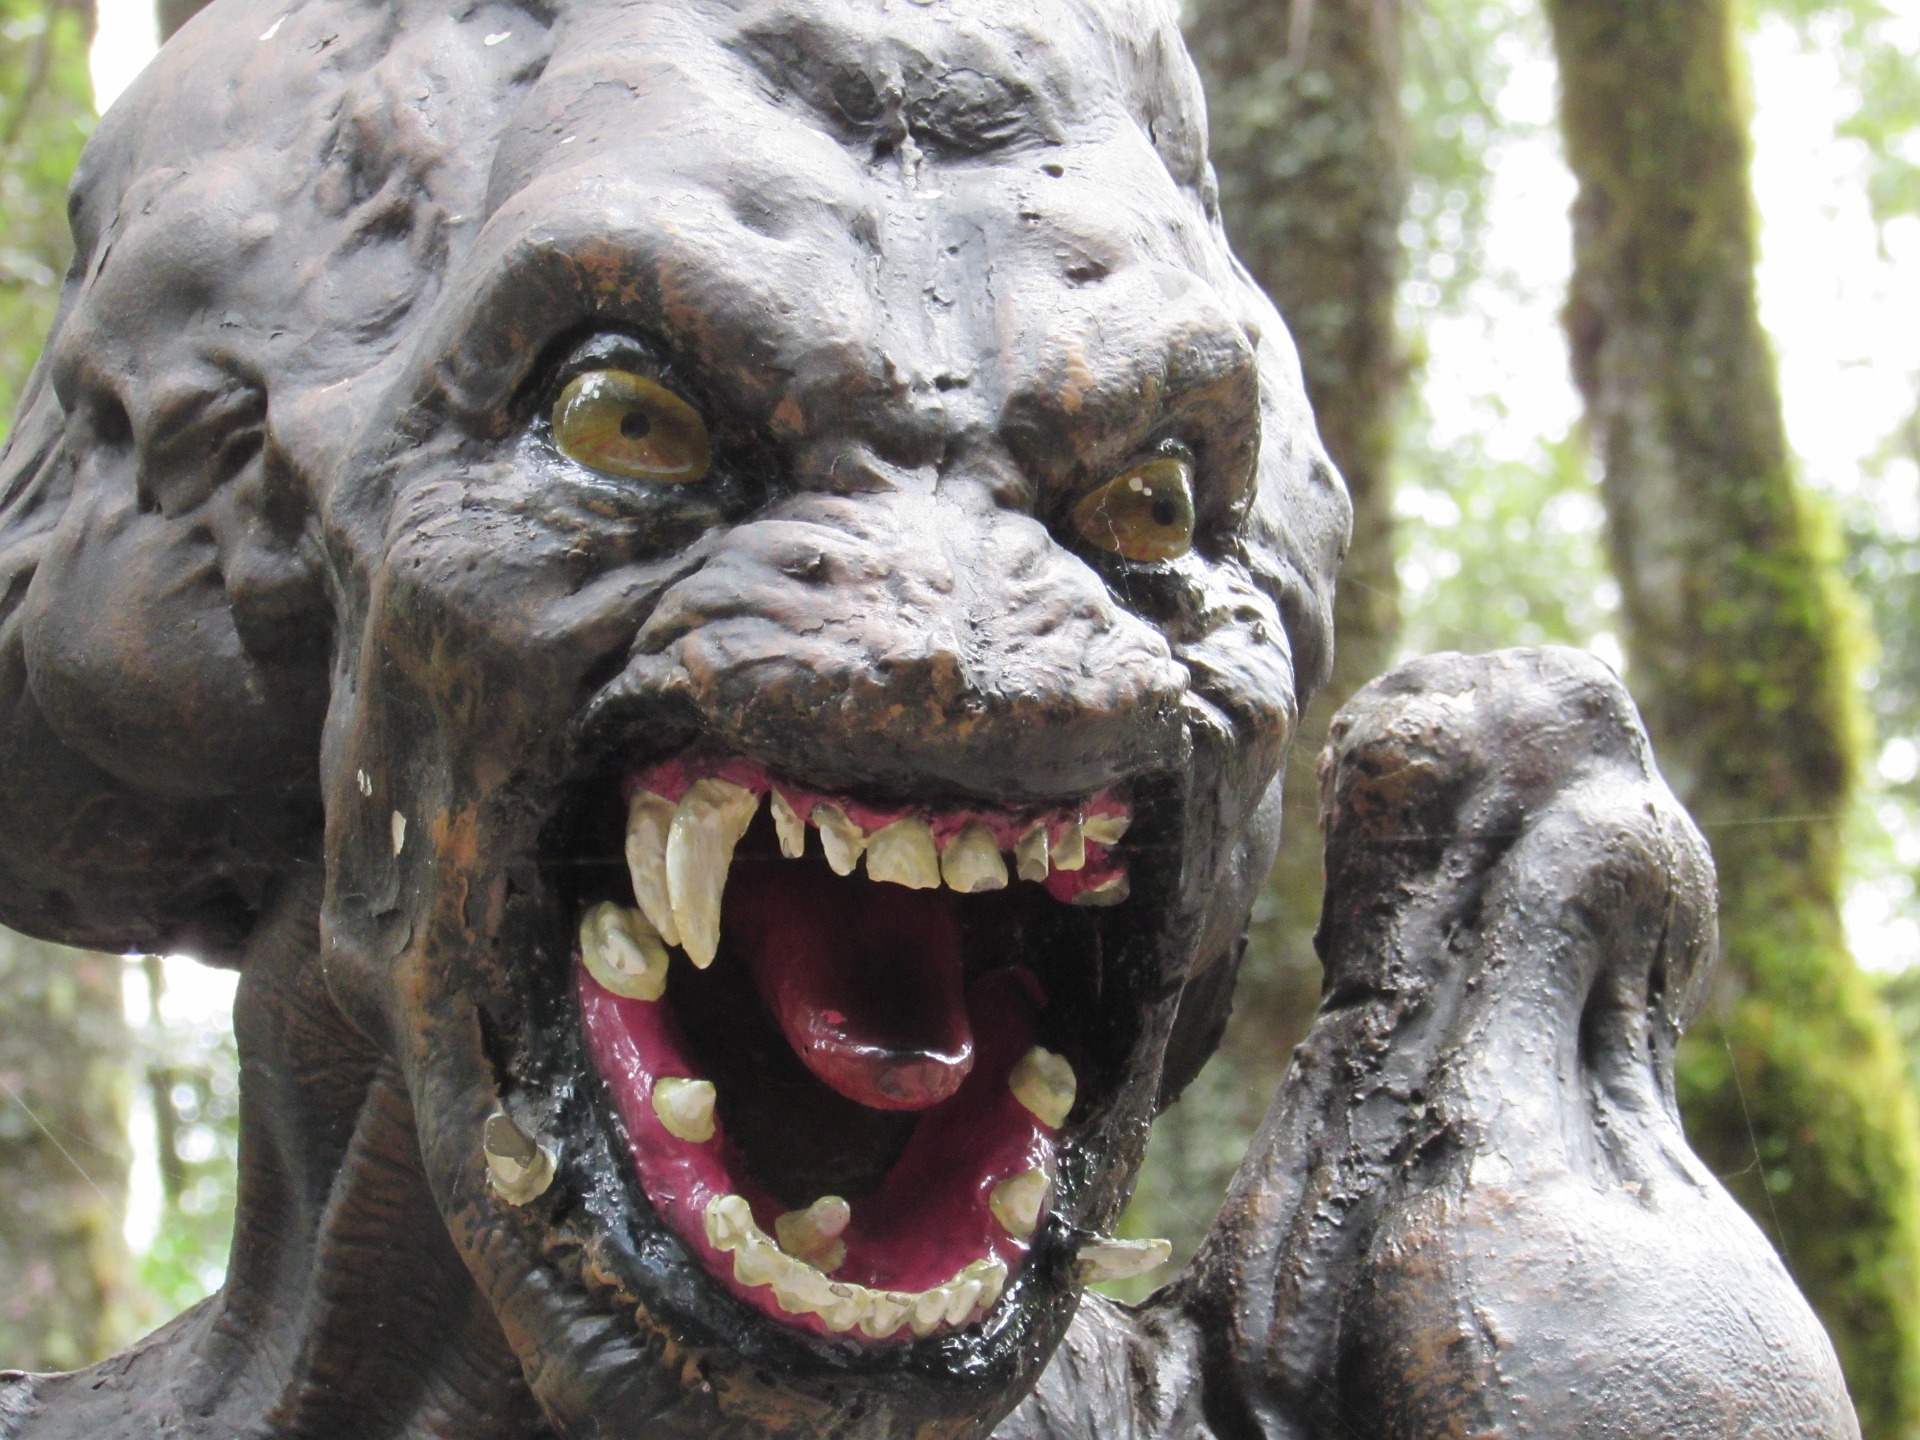 https://pixabay.com/en/predator-monster-terror-horror-998074/